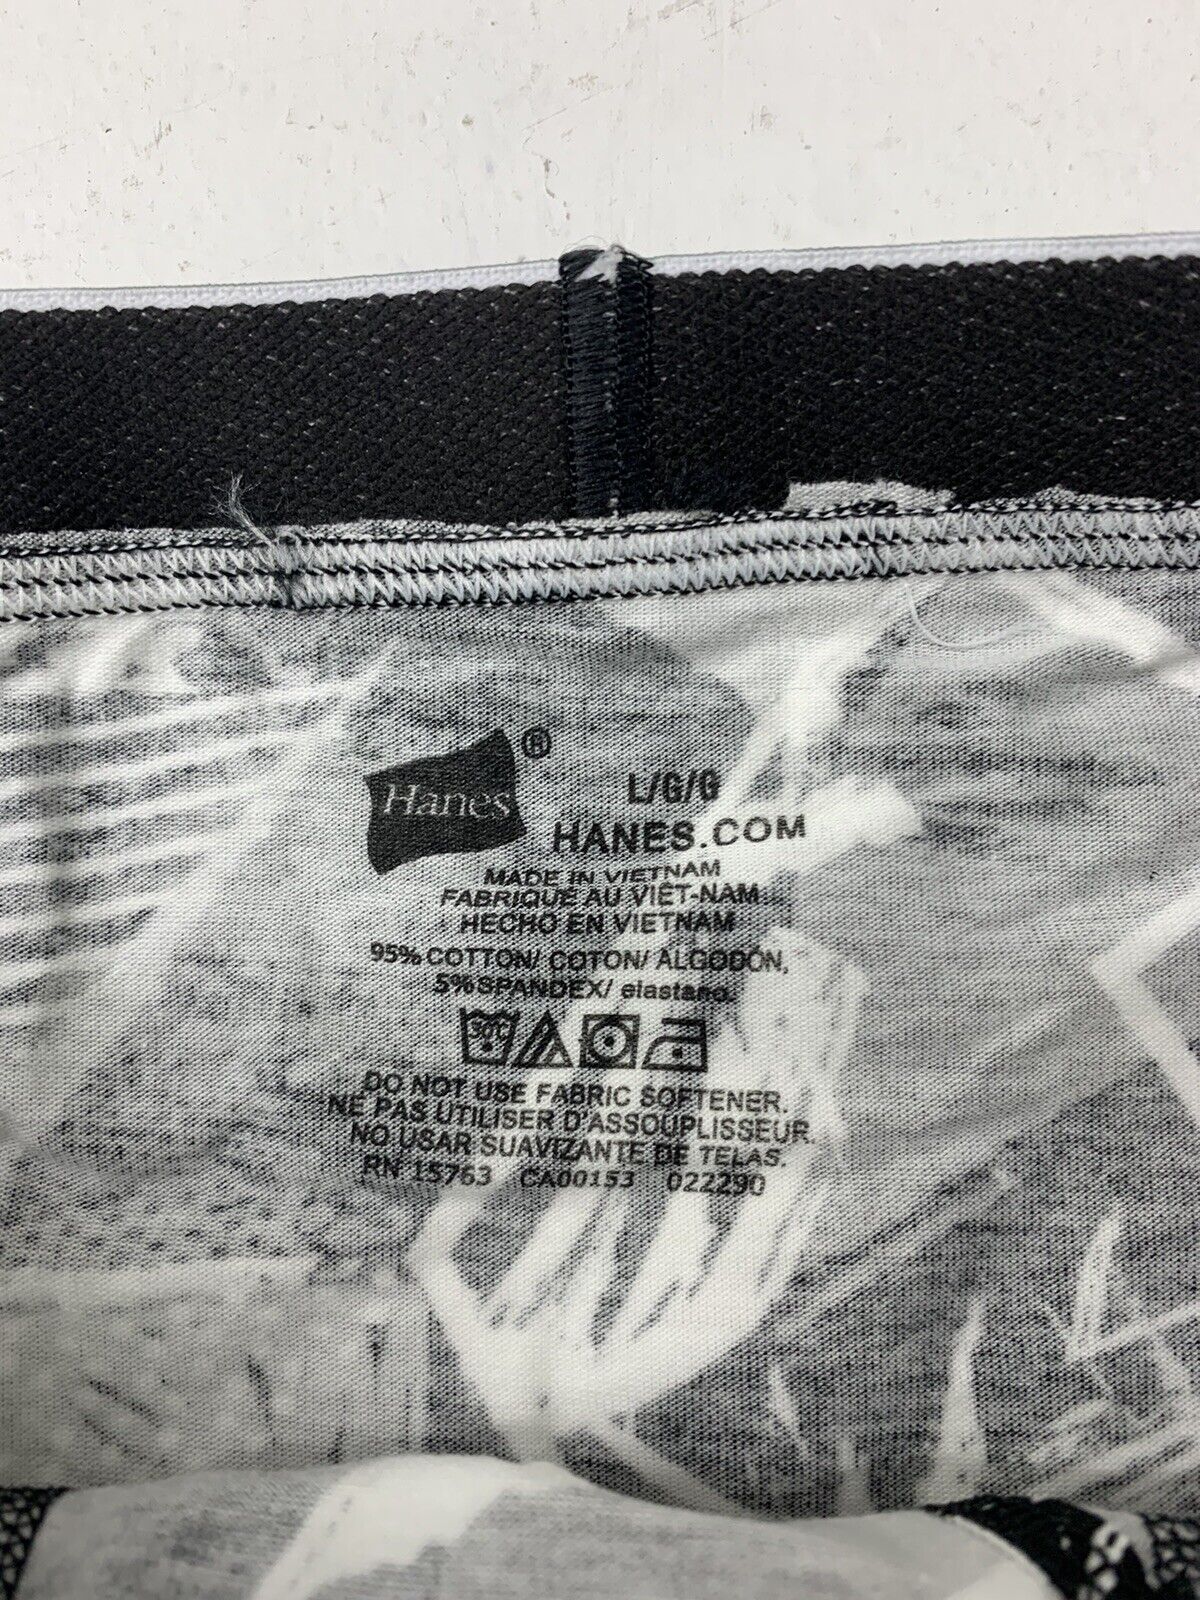 Vintage Hanes Briefs Cotton Underwear Black Gray Colored Mens Size